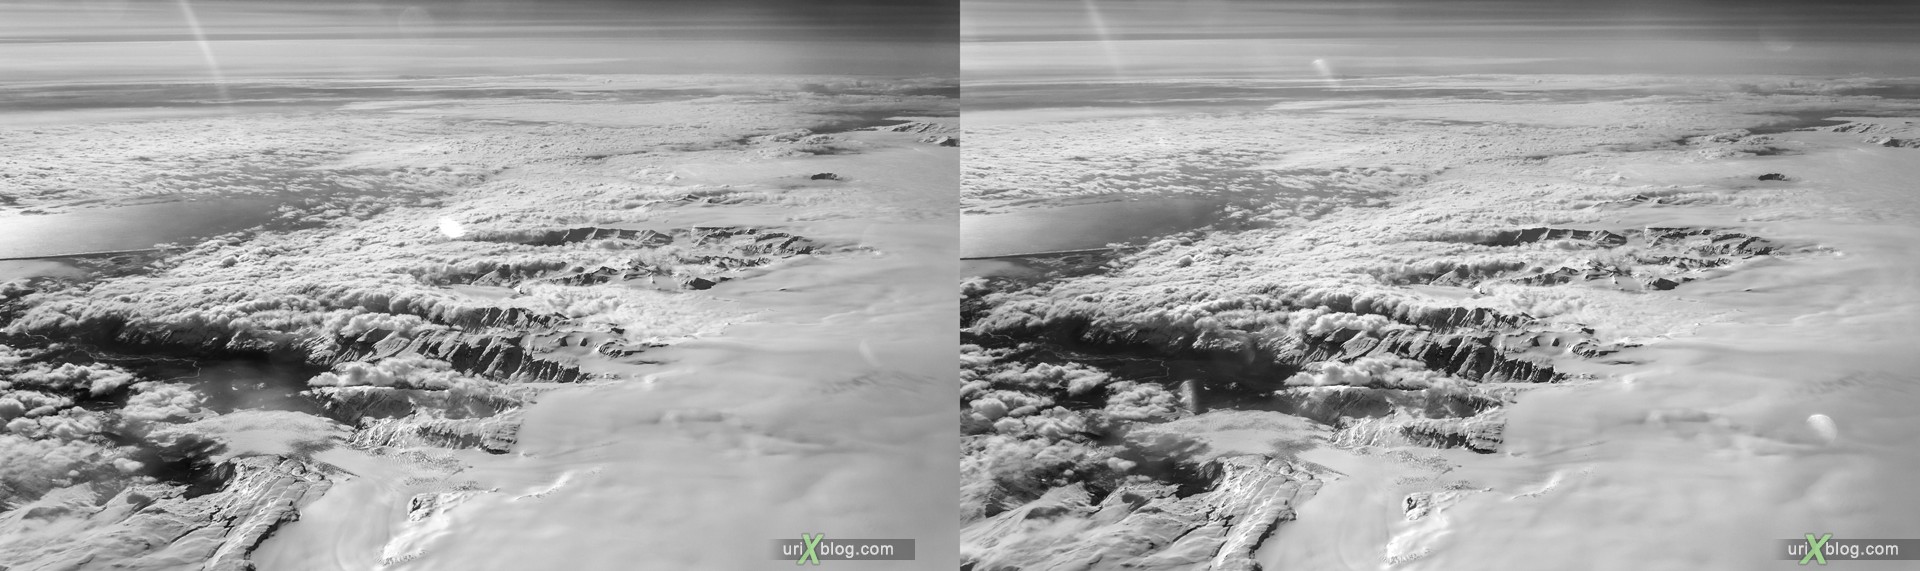 2013, Исландия, горы, панорама, самолёт, чёрно-белое, чб, снег, лёд, облака, горизонт, 3D, перекрёстные стереопары, стерео, стереопара, стереопары